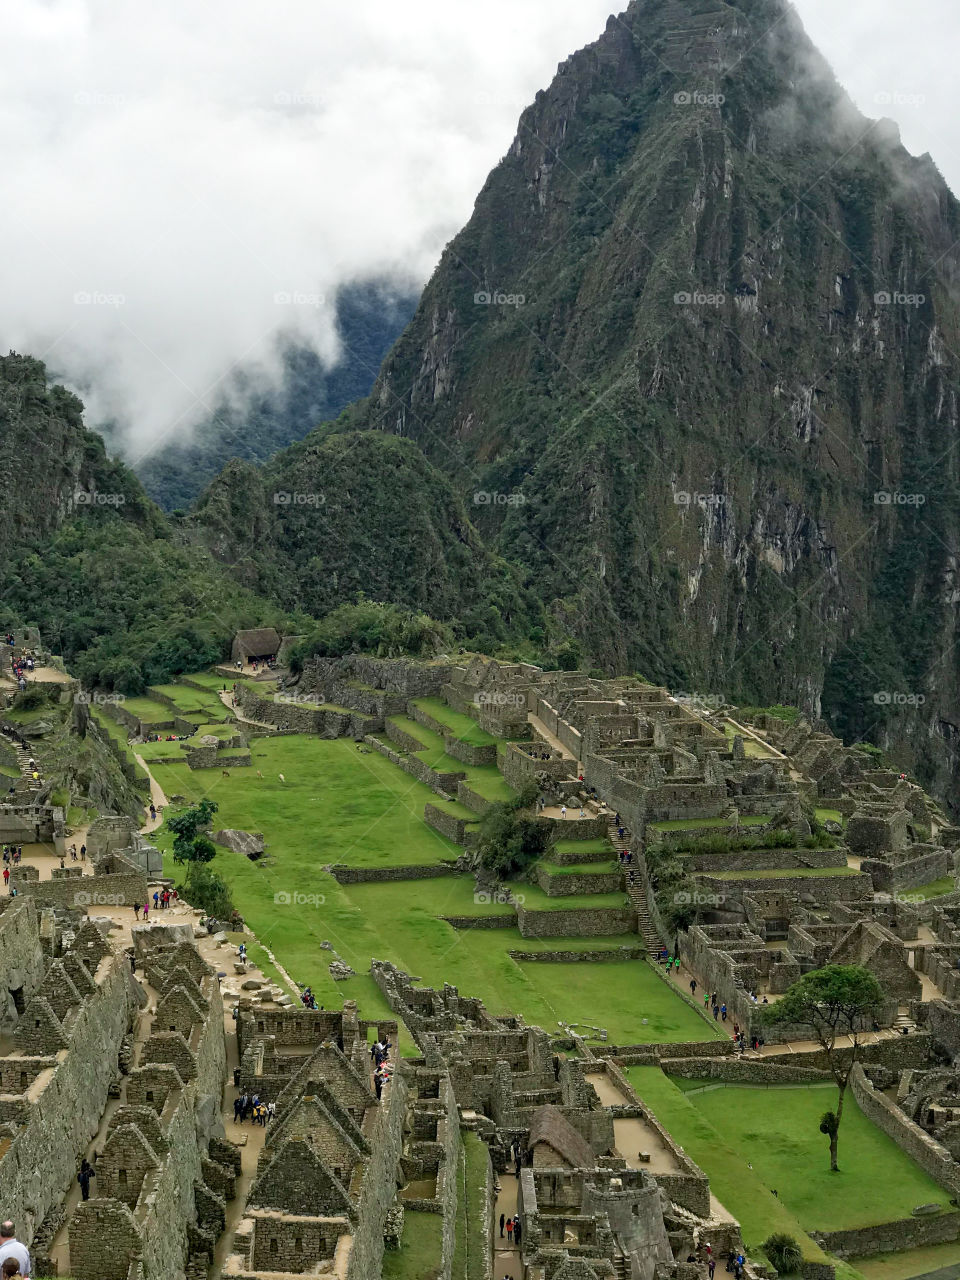 Machu Picchu, também chamada "cidade perdida dos Incas", é uma cidade pré-colombiana bem conservada, localizada no topo de uma montanha, no vale do rio Urubamba, atual Peru